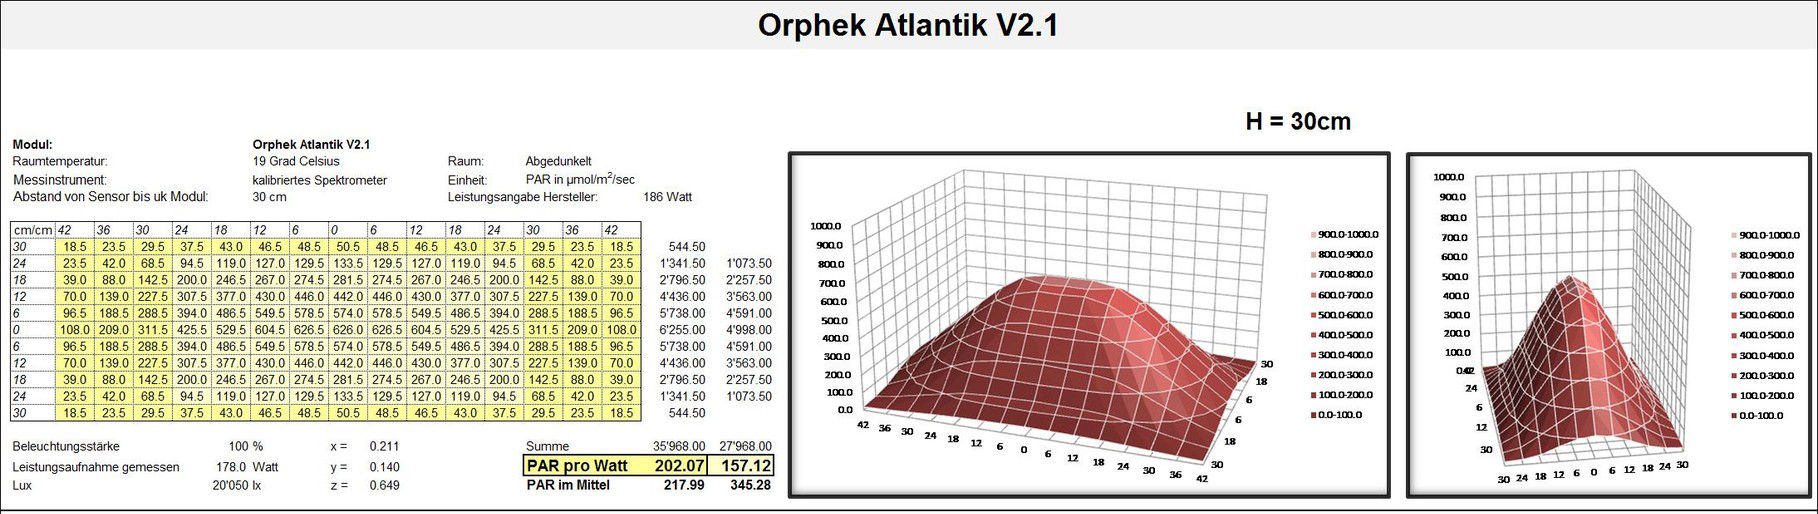 Orphek-Atlantik PAR MAP-v2.1